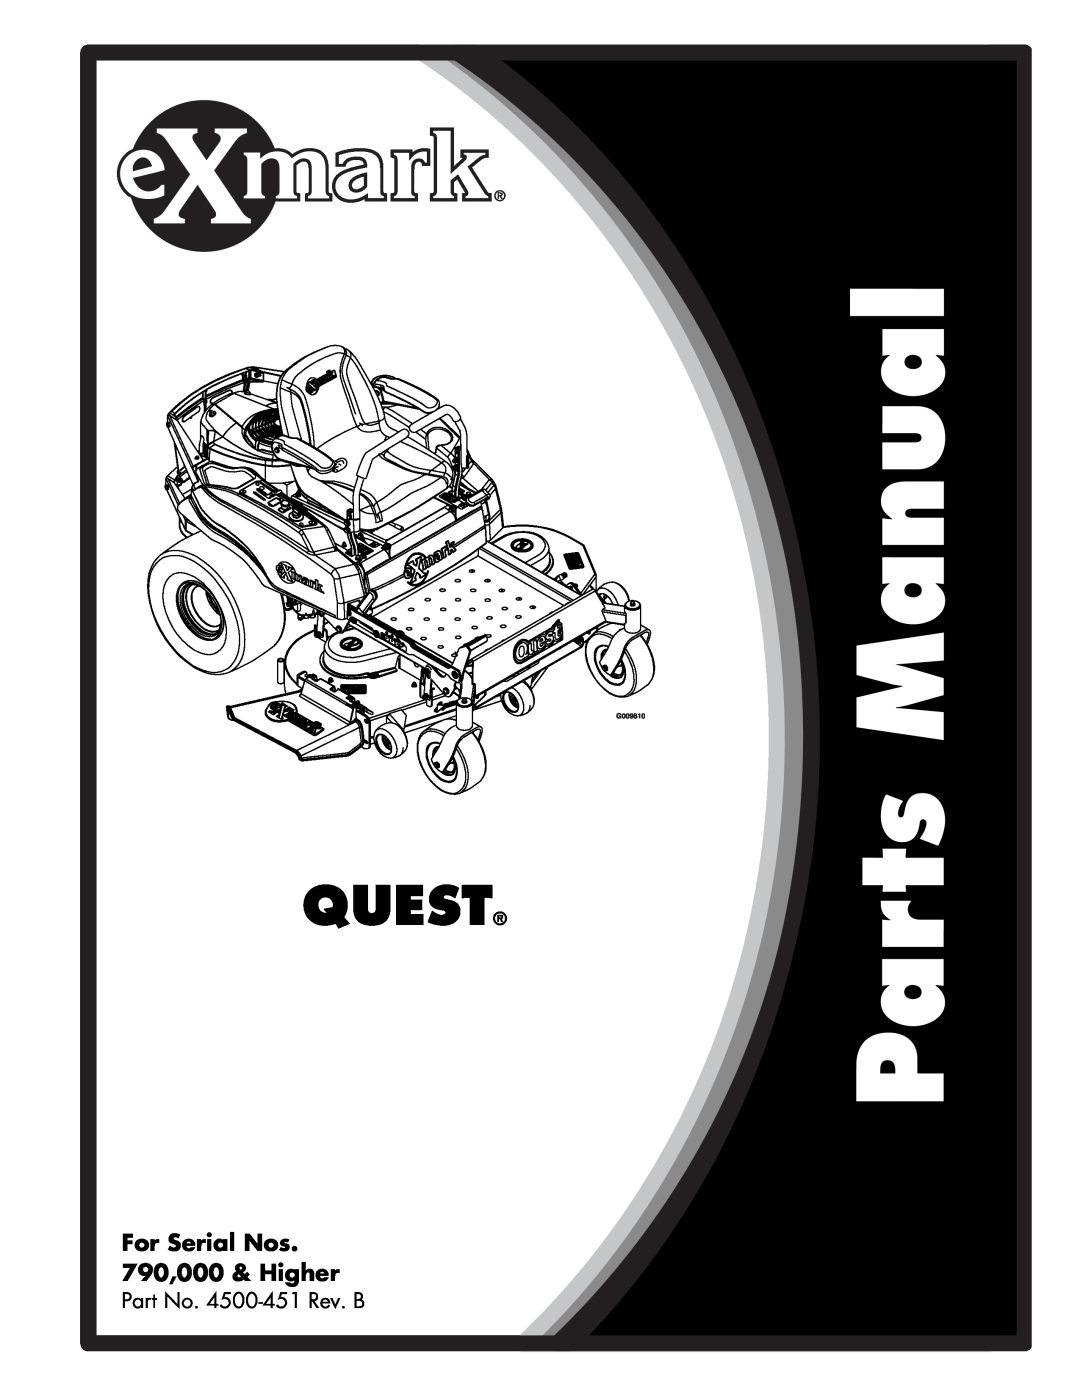 Exmark manual Quest, For Serial Nos 790,000 & Higher, Part No. 4500-451Rev. B 